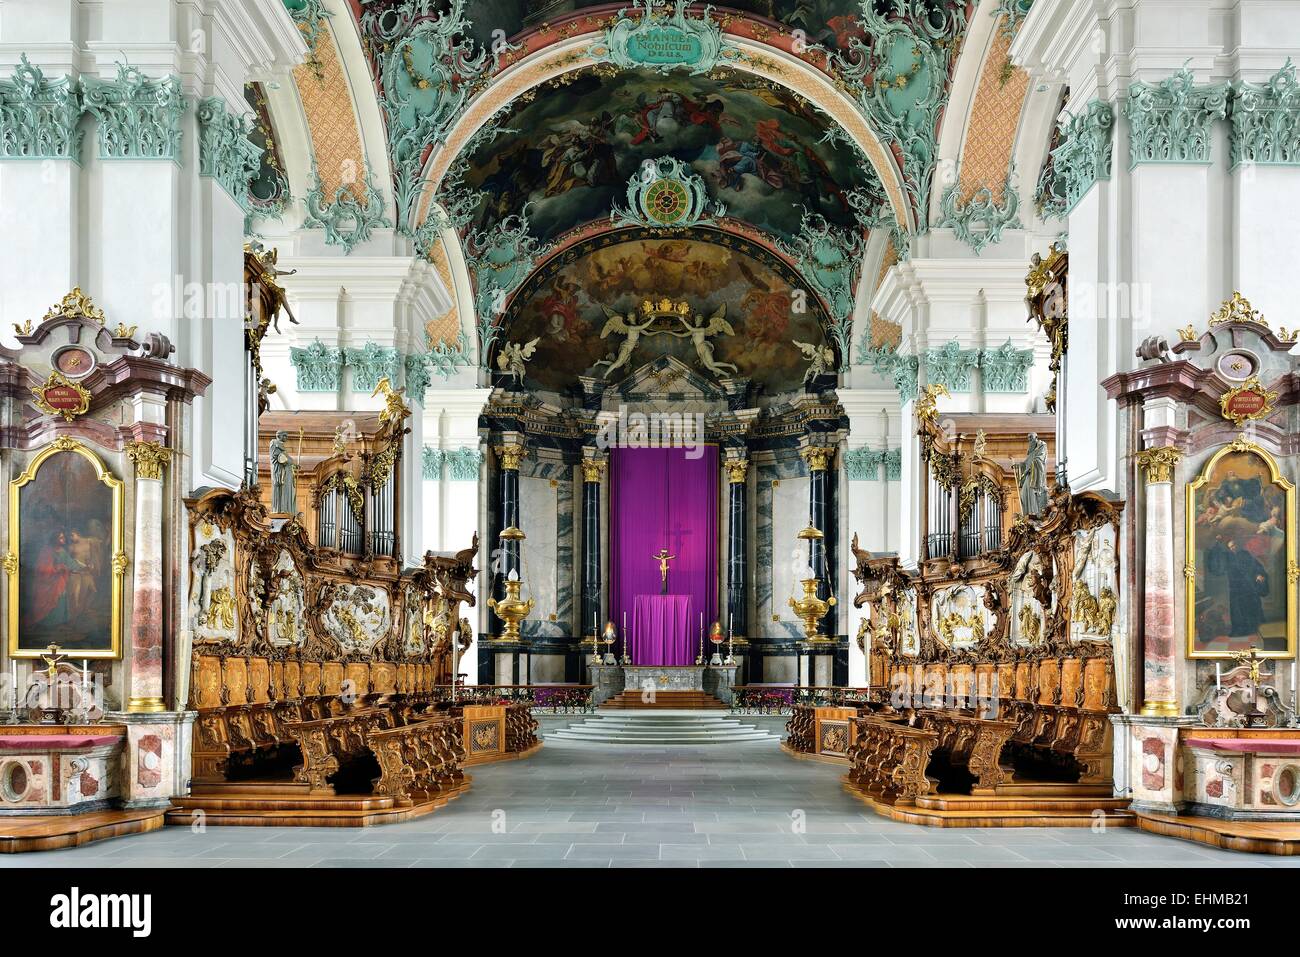 Choir of the St. Gallen Cathedral, UNESCO World Heritage Site, St. Gallen, Switzerland Stock Photo